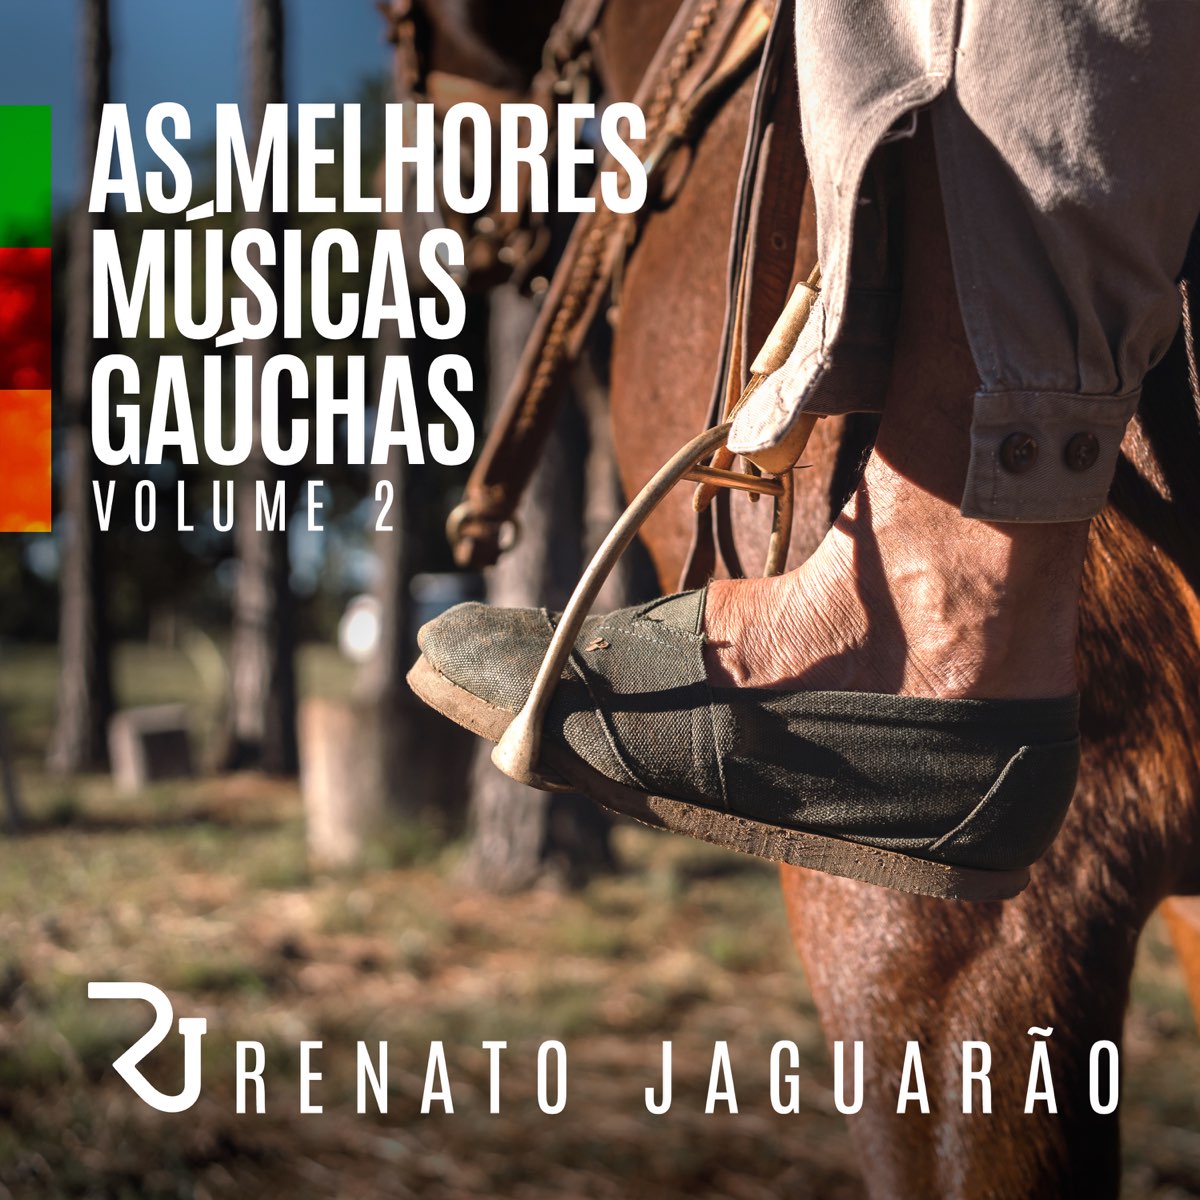 As Melhores Músicas Gaúchas, Vol. 2 - Album by RENATO JAGUARÃO - Apple Music